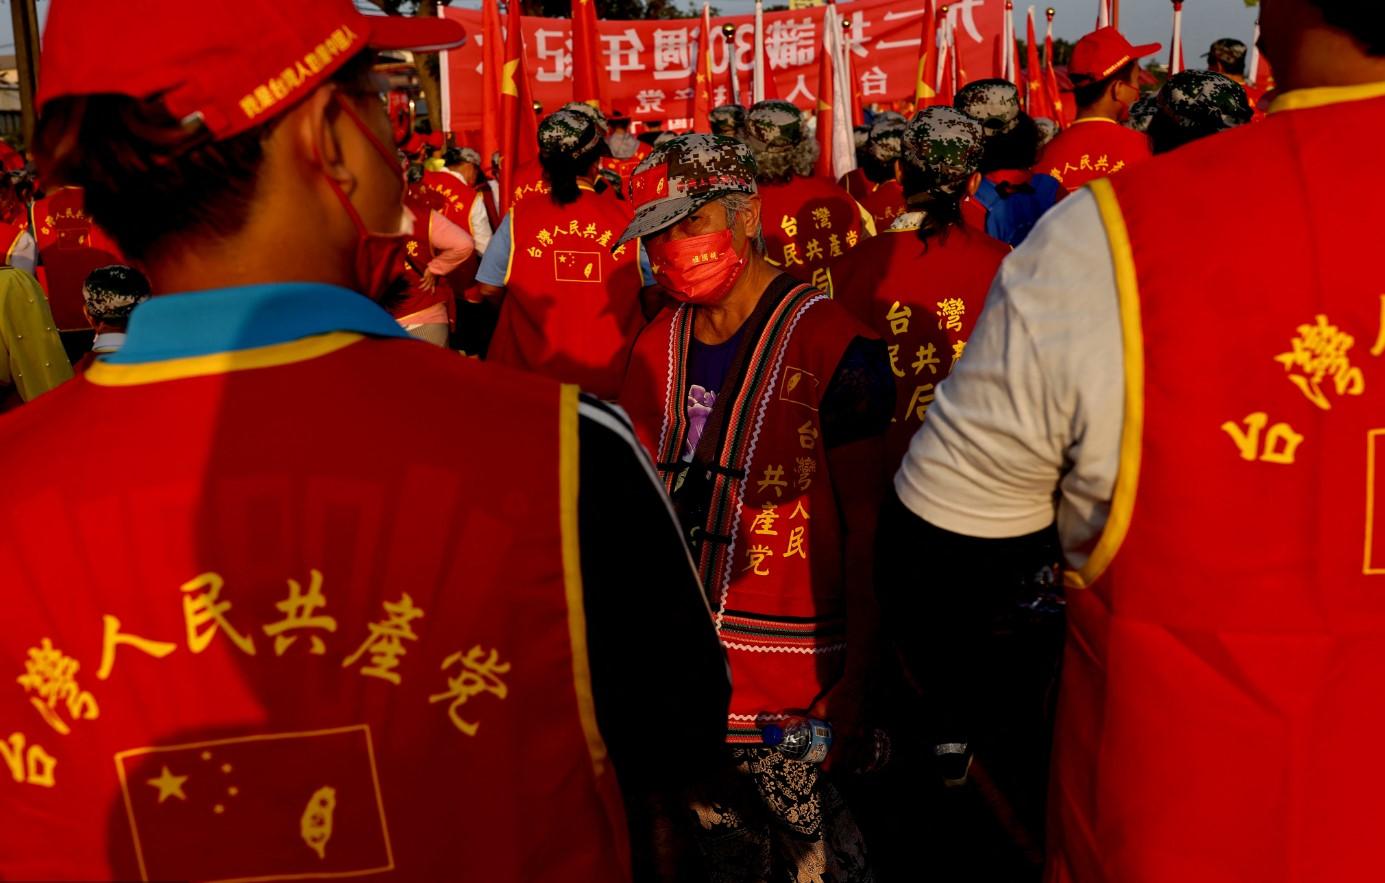 Kina proslavlja Dan državnosti